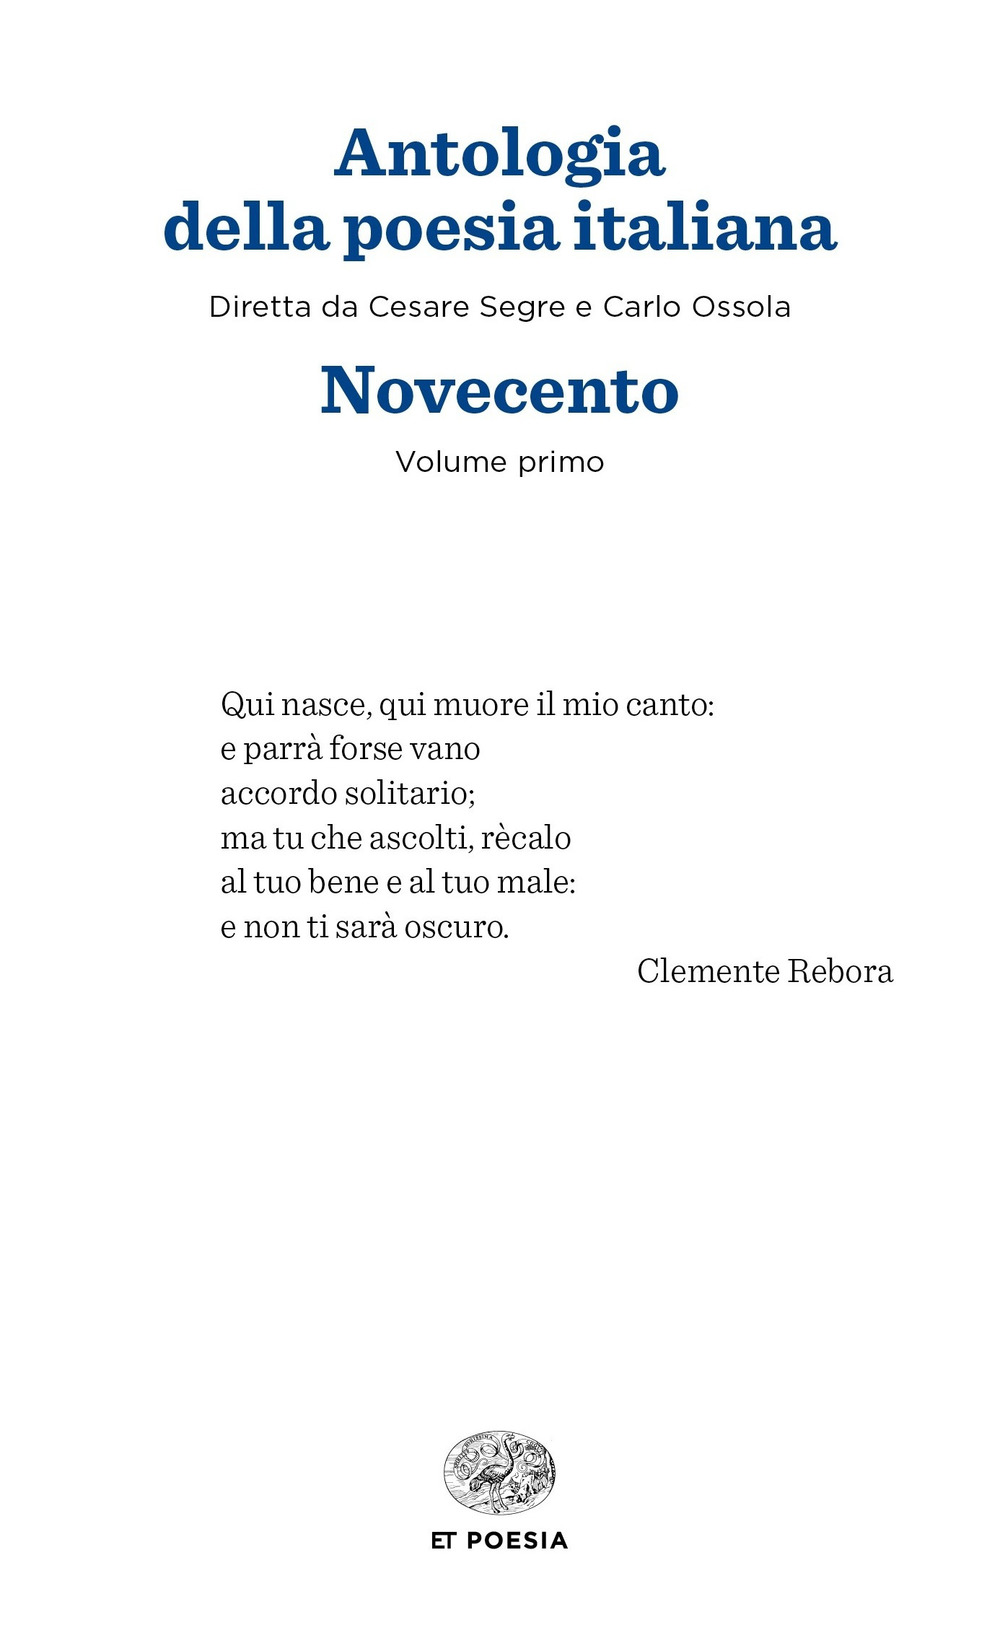 Image of Antologia della poesia italiana. Vol. 1: Novecento.